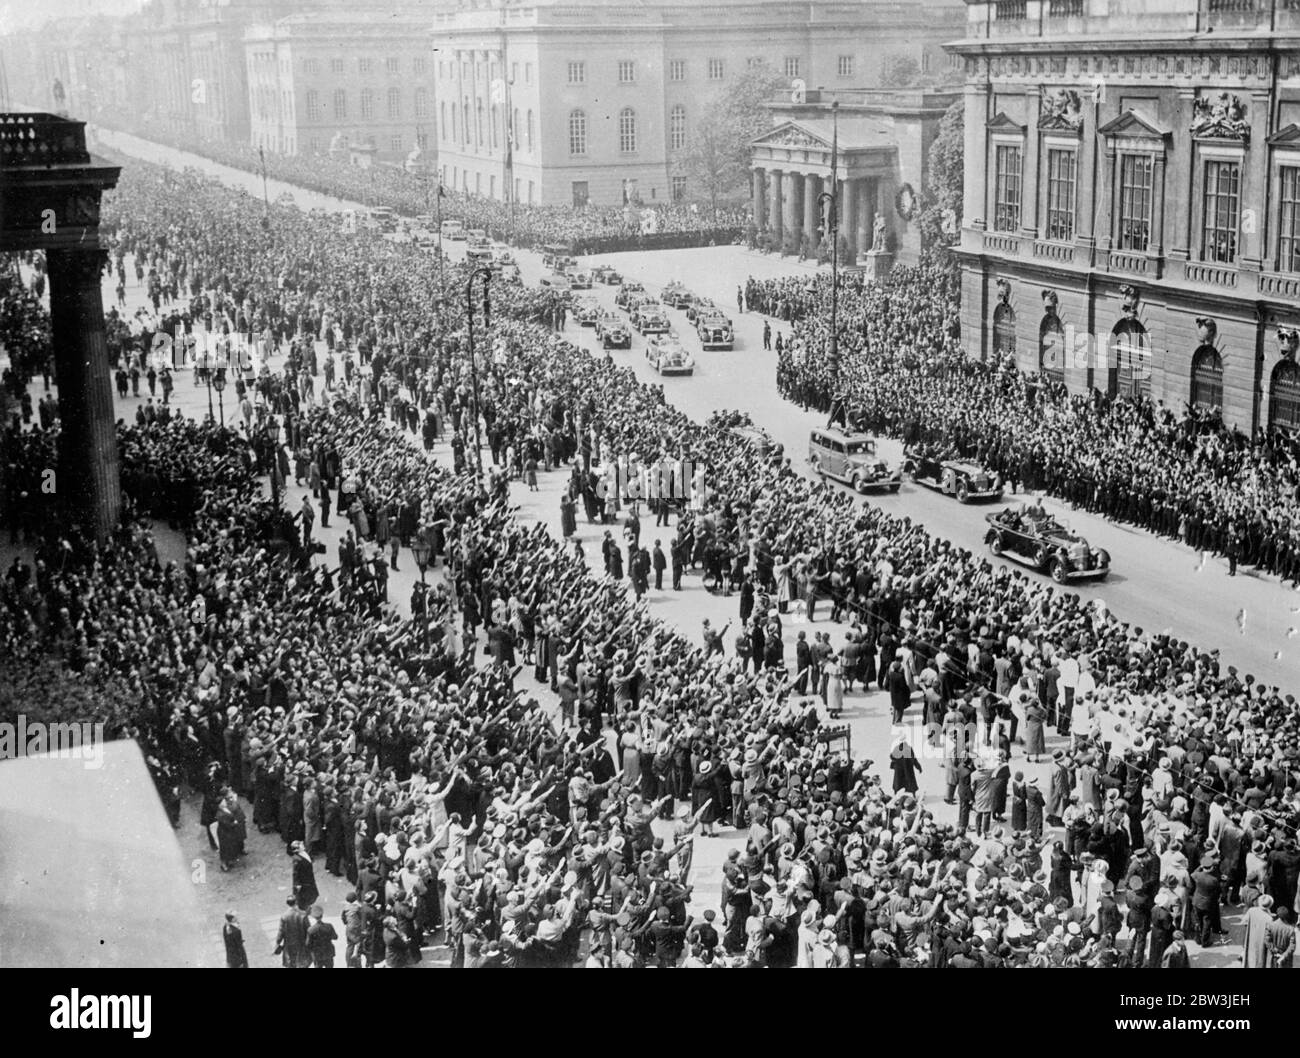 Des millions saluent Hitmer dans les rues de Berlin . Avec 2 , 000 , 000 personnes , s'étendant sur quatre miles , rassemblées pour entendre son discours , le chancelier Hitler a parlé à l'ensemble du peuple allemand des marches du Museam de Berlin sur le Lustgarten à l'occasion de la Journée nationale du travail ( Mai jour ) . Le discours a été reproduit par des haut-parleurs à Berlin et dans tout le Reich . Hitler a dénoncé comme menteurs ceux qui disent que l'Allemagne se prépare à envahir l'Autriche ou la Tchécoslovaquie . ' Je ne conduit pas des millions à être massacrés de sorte que d'autres millions devraient croire en moi ' a-t-il dit . Photos , chancelier frappé Banque D'Images